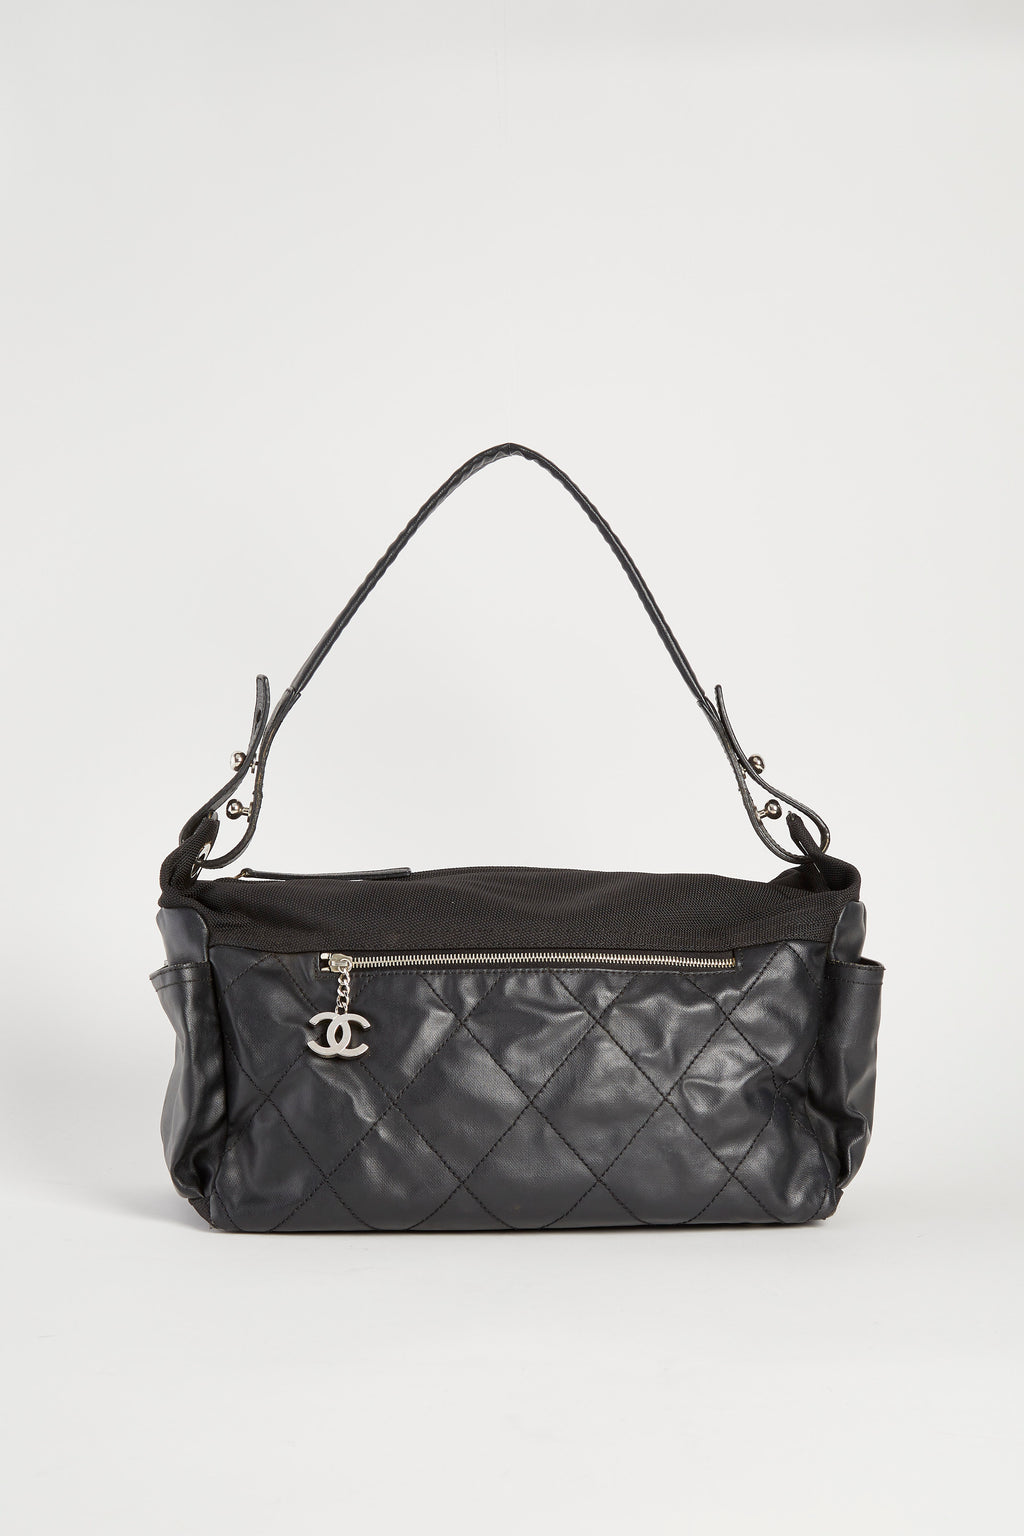 2000s Chanel Black Paris Biarritz Shoulder Bag